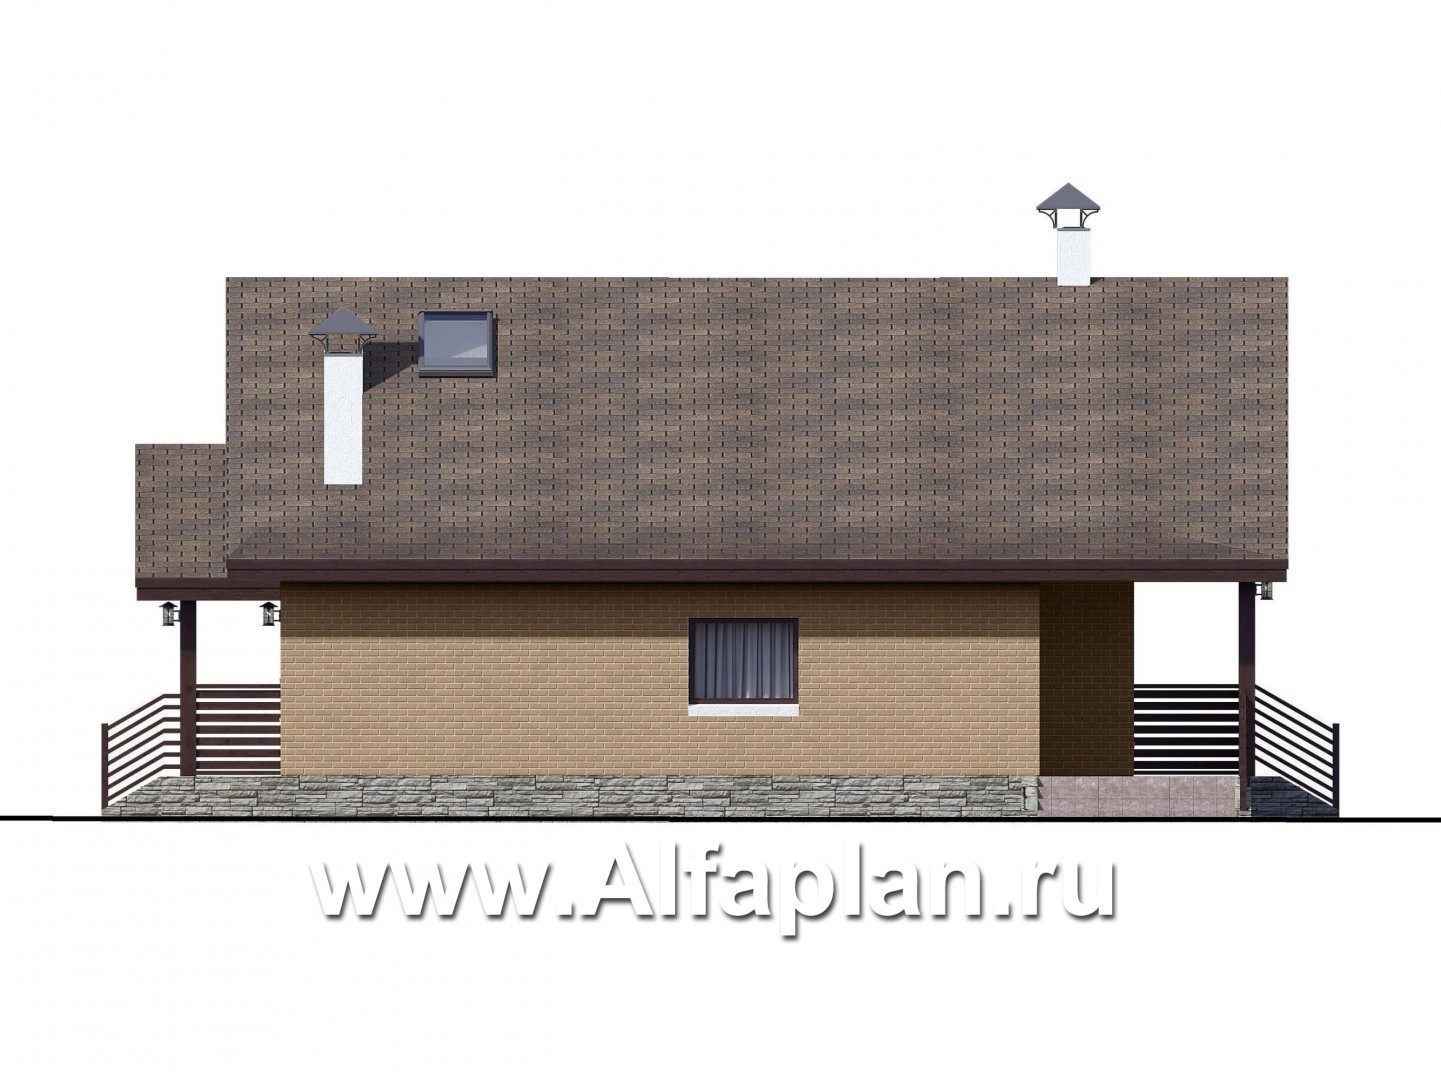 Проекты домов Альфаплан - «Моризо» - проект дома с мансардой, планировка с двусветной гостиной и 2 спальни на 1 эт, шале с двускатной крышей - изображение фасада №3